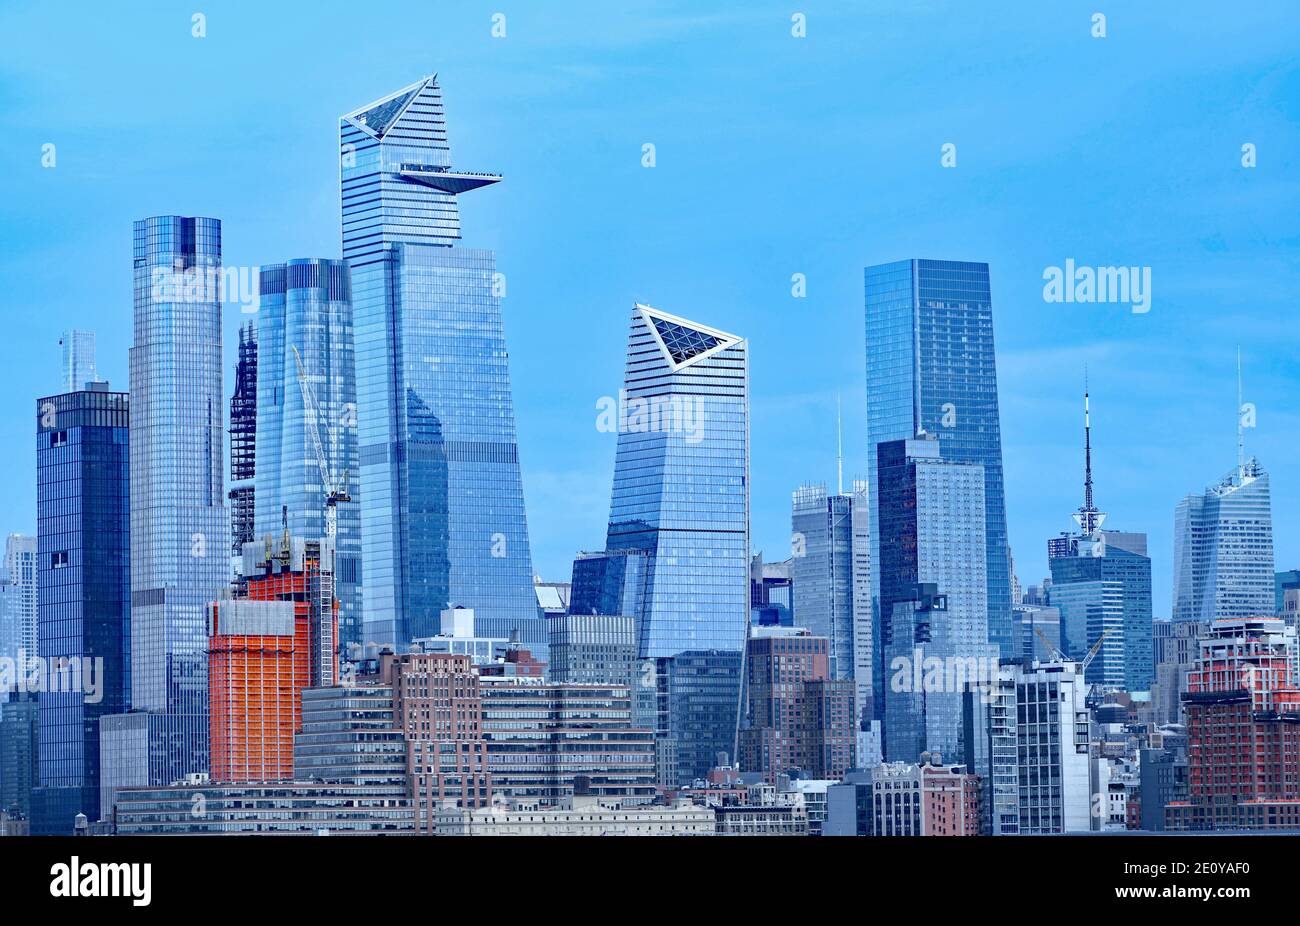 Manhattan Midtown Skyline im Dezember 2020, zeigt Hudson Yards von der anderen Seite des Hudson River aus gesehen Stockfoto